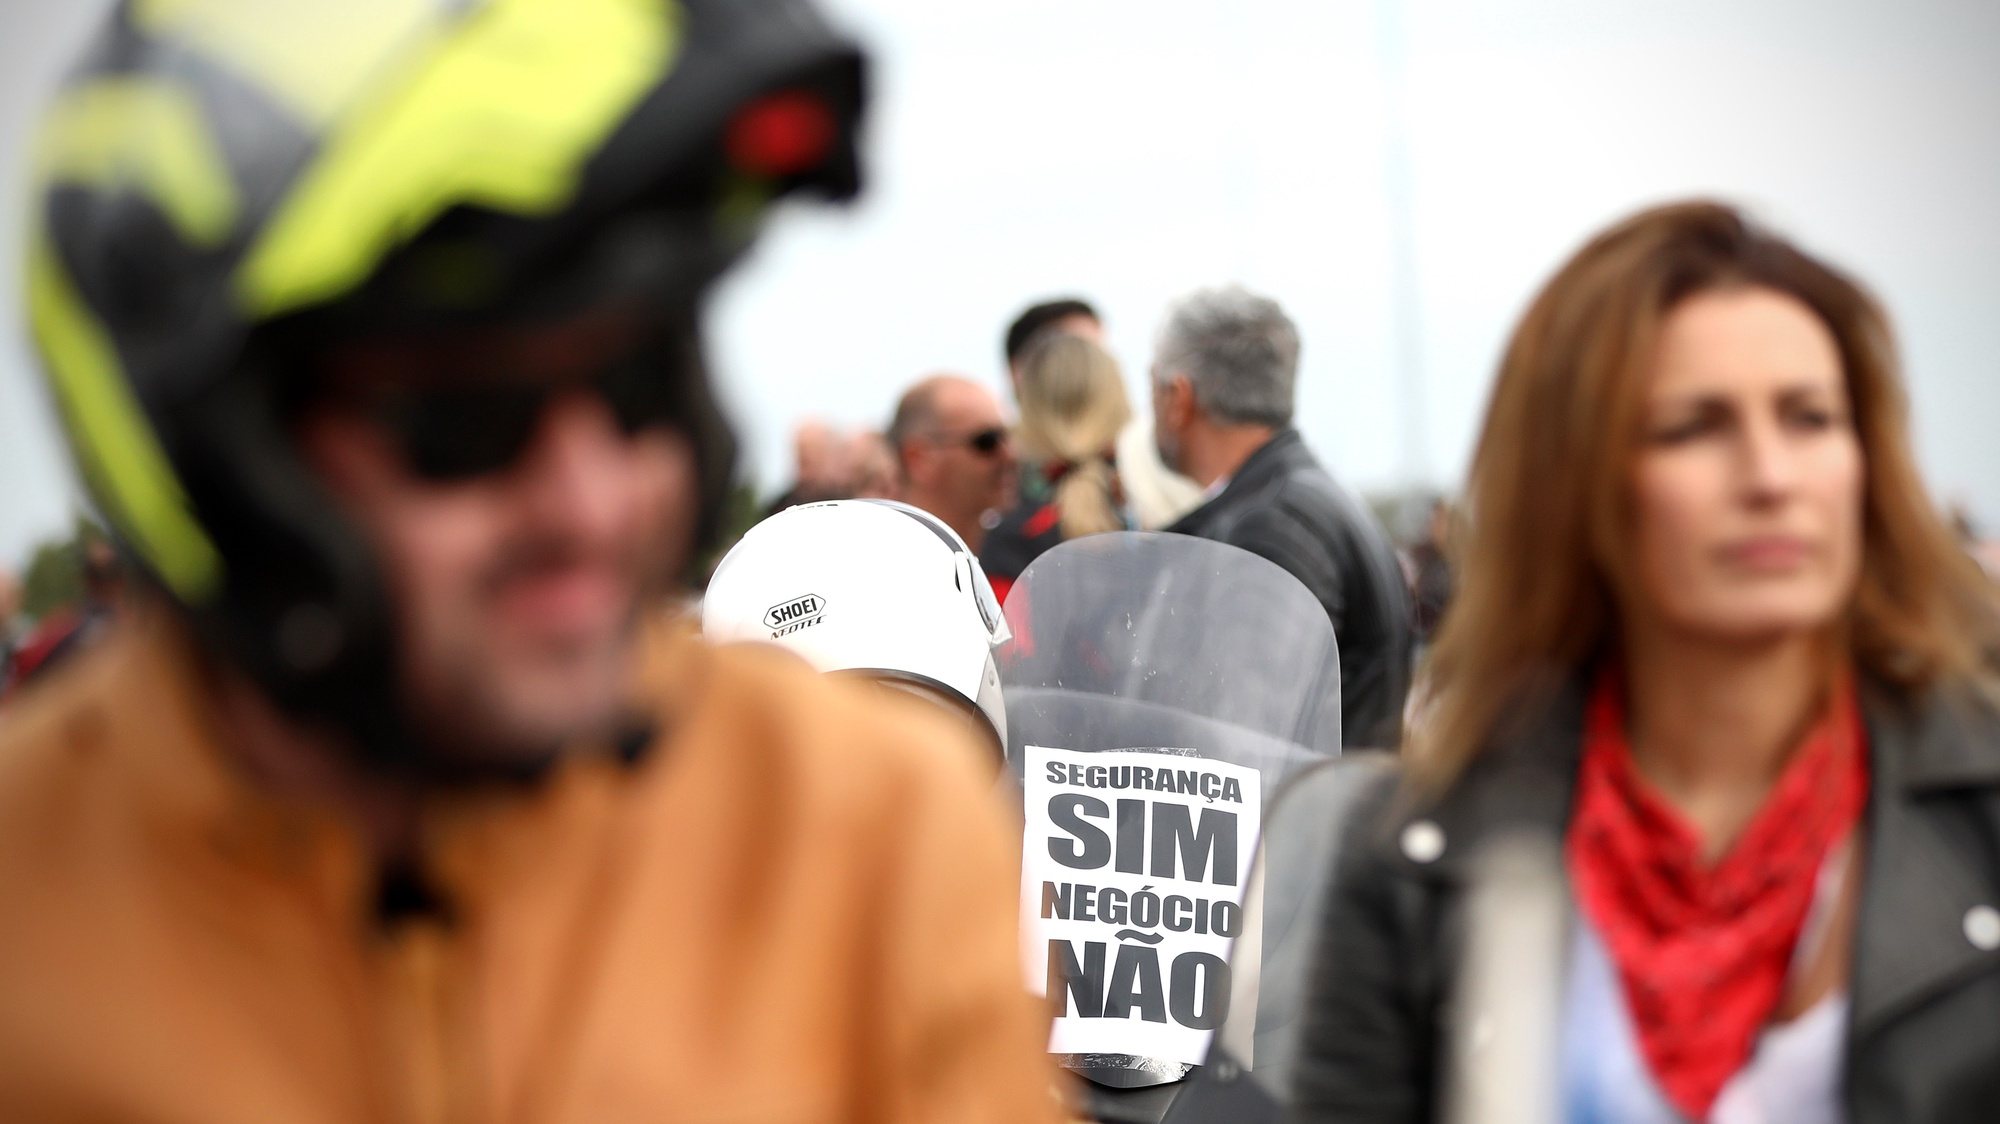 Motociclistas manifestam-se contra as inspeções periódicas, uma medida imposta pelo Governo para os motociclos que entra em vigor a partir de janeiro de 2022, em Lisboa, 16 de outubro de 2021. ANTÓNIO PEDRO SANTOS/LUSA